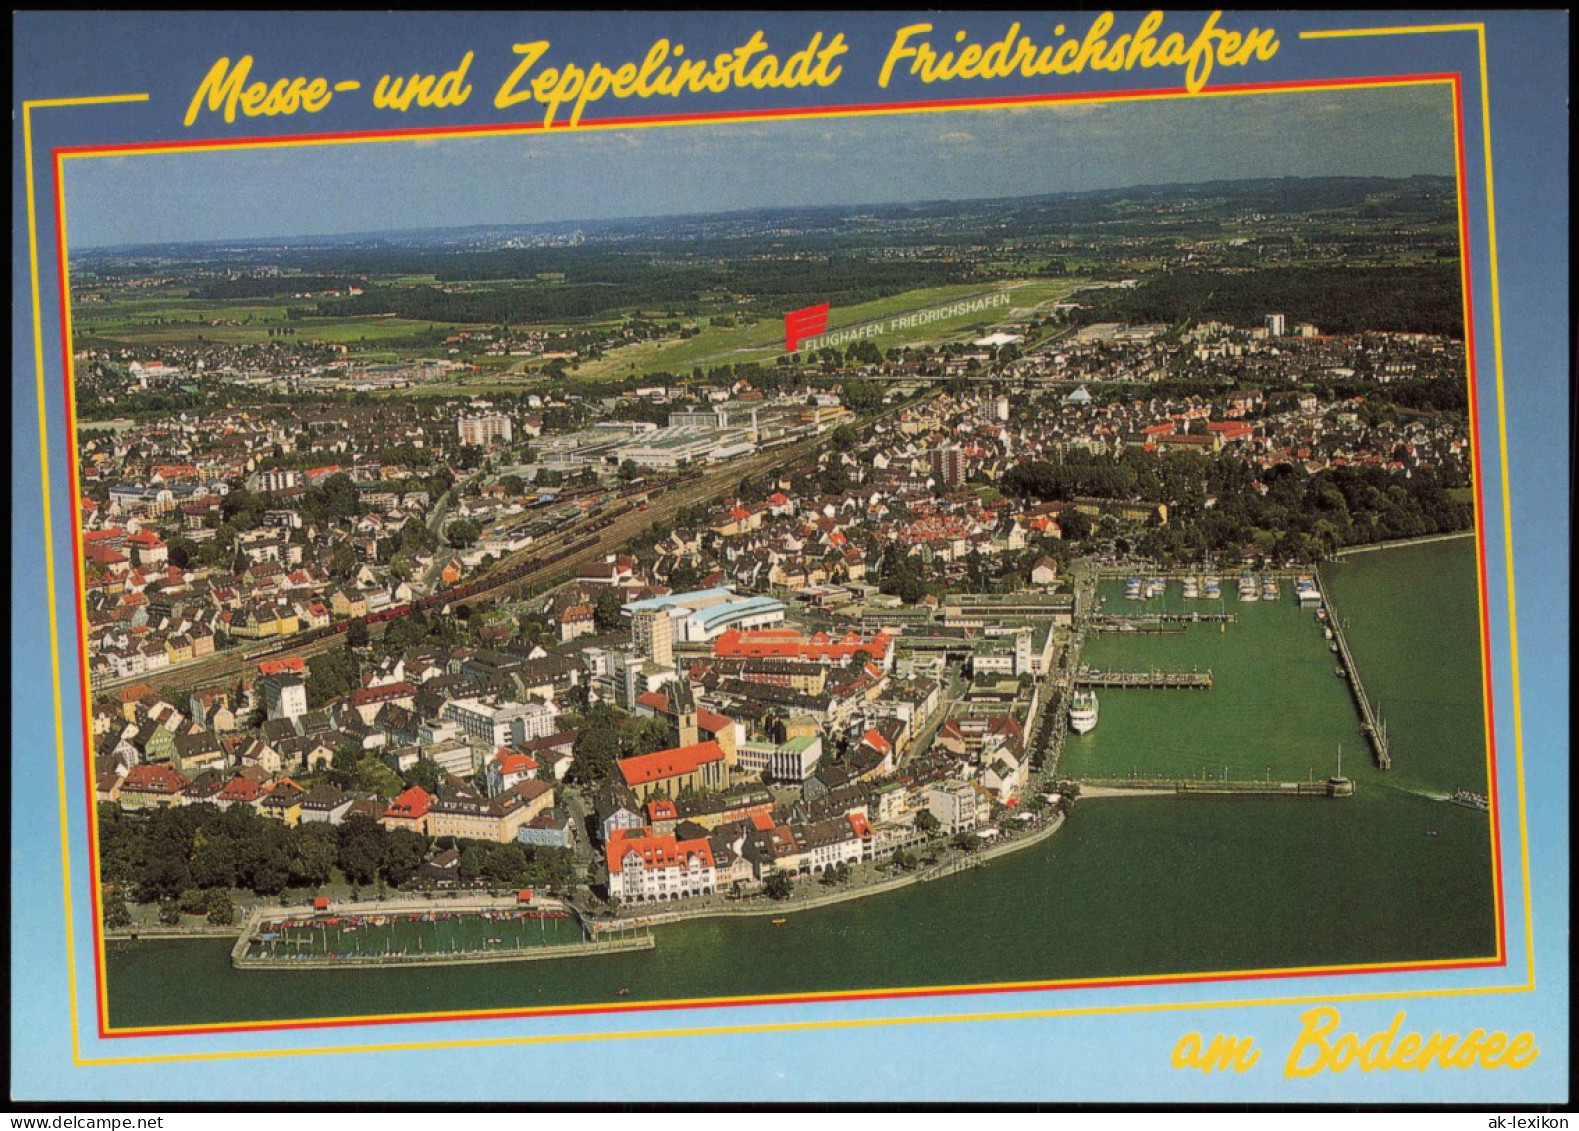 Friedrichshafen Luftbild Der Messe- Und Zeppelinstadt Friedrichshafen 1997 - Friedrichshafen